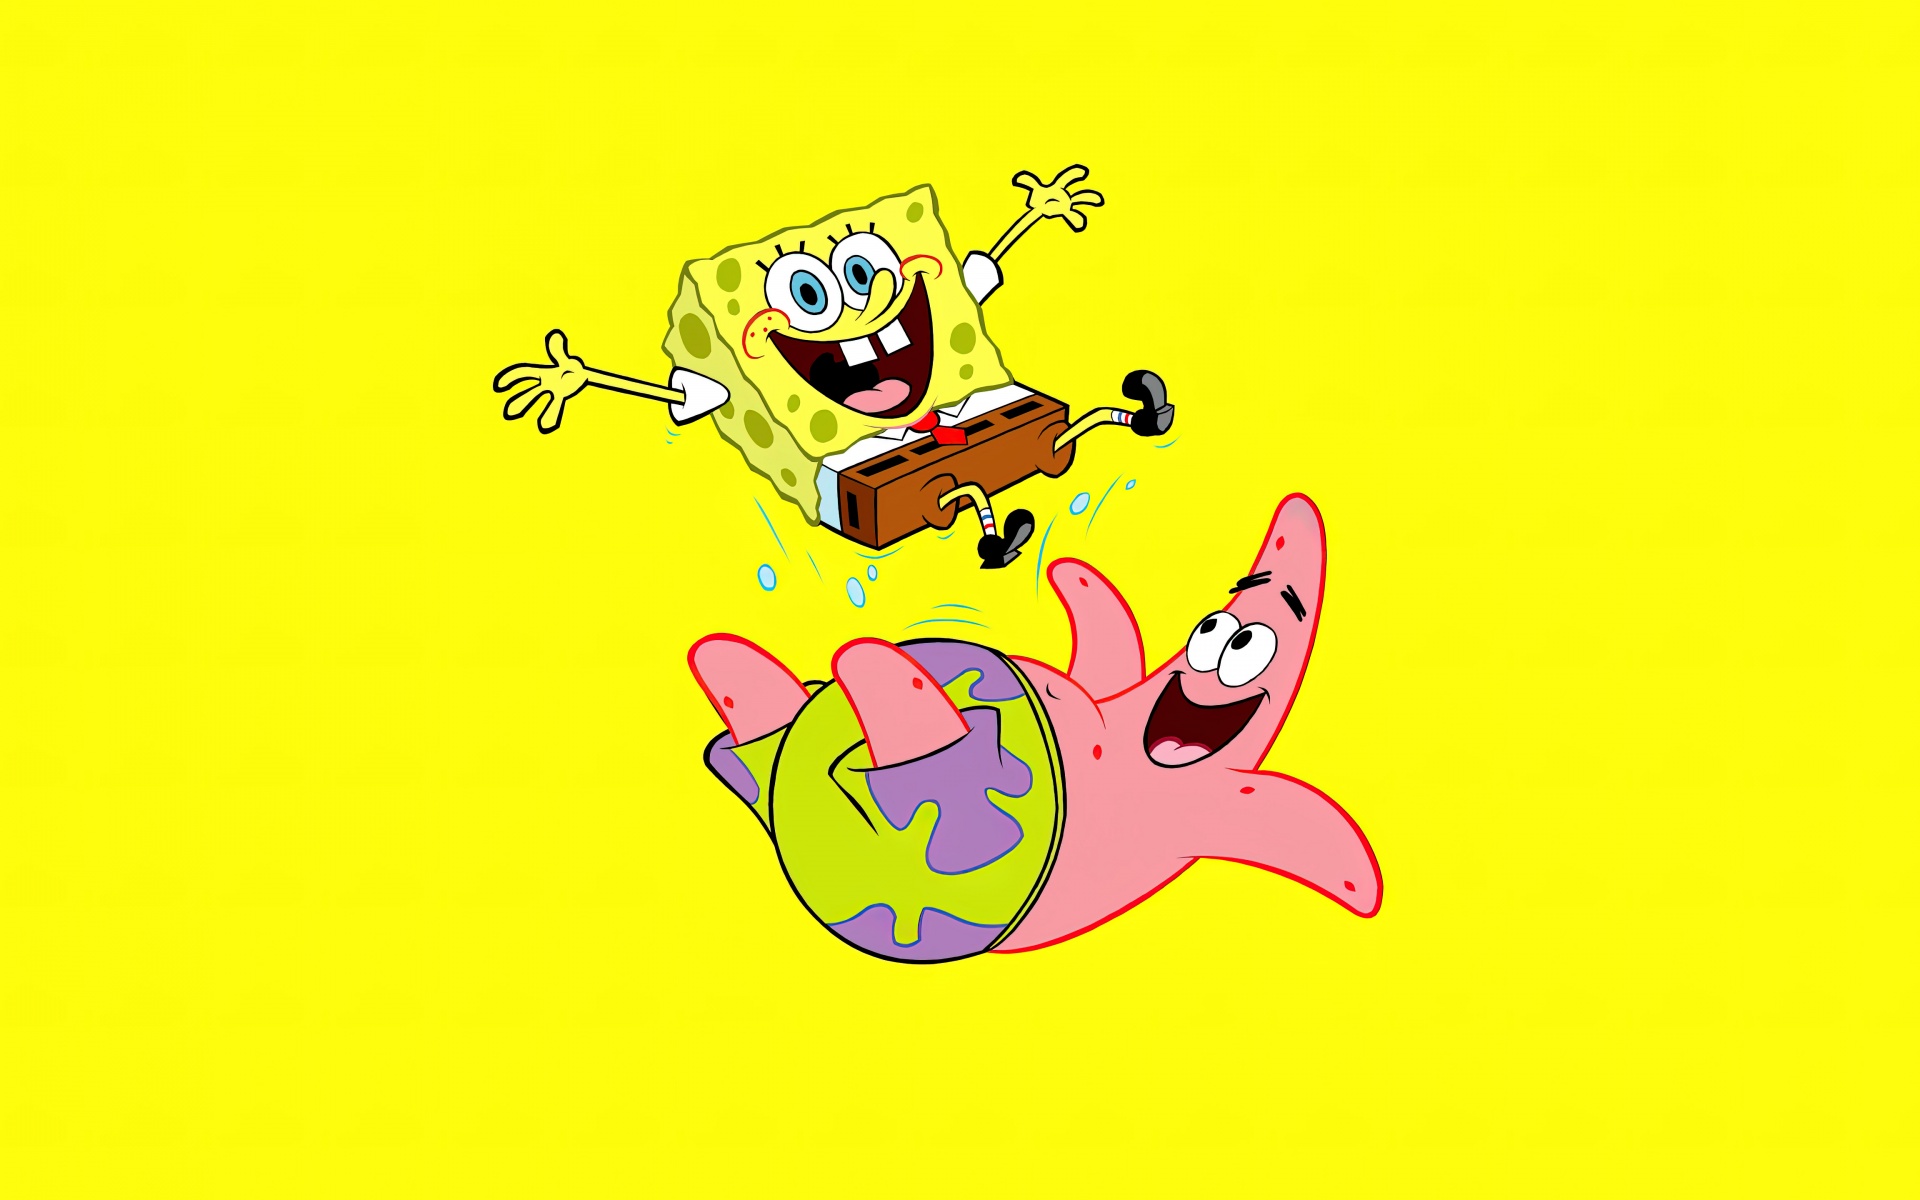 spongebob squarepants and patrick star wallpaper